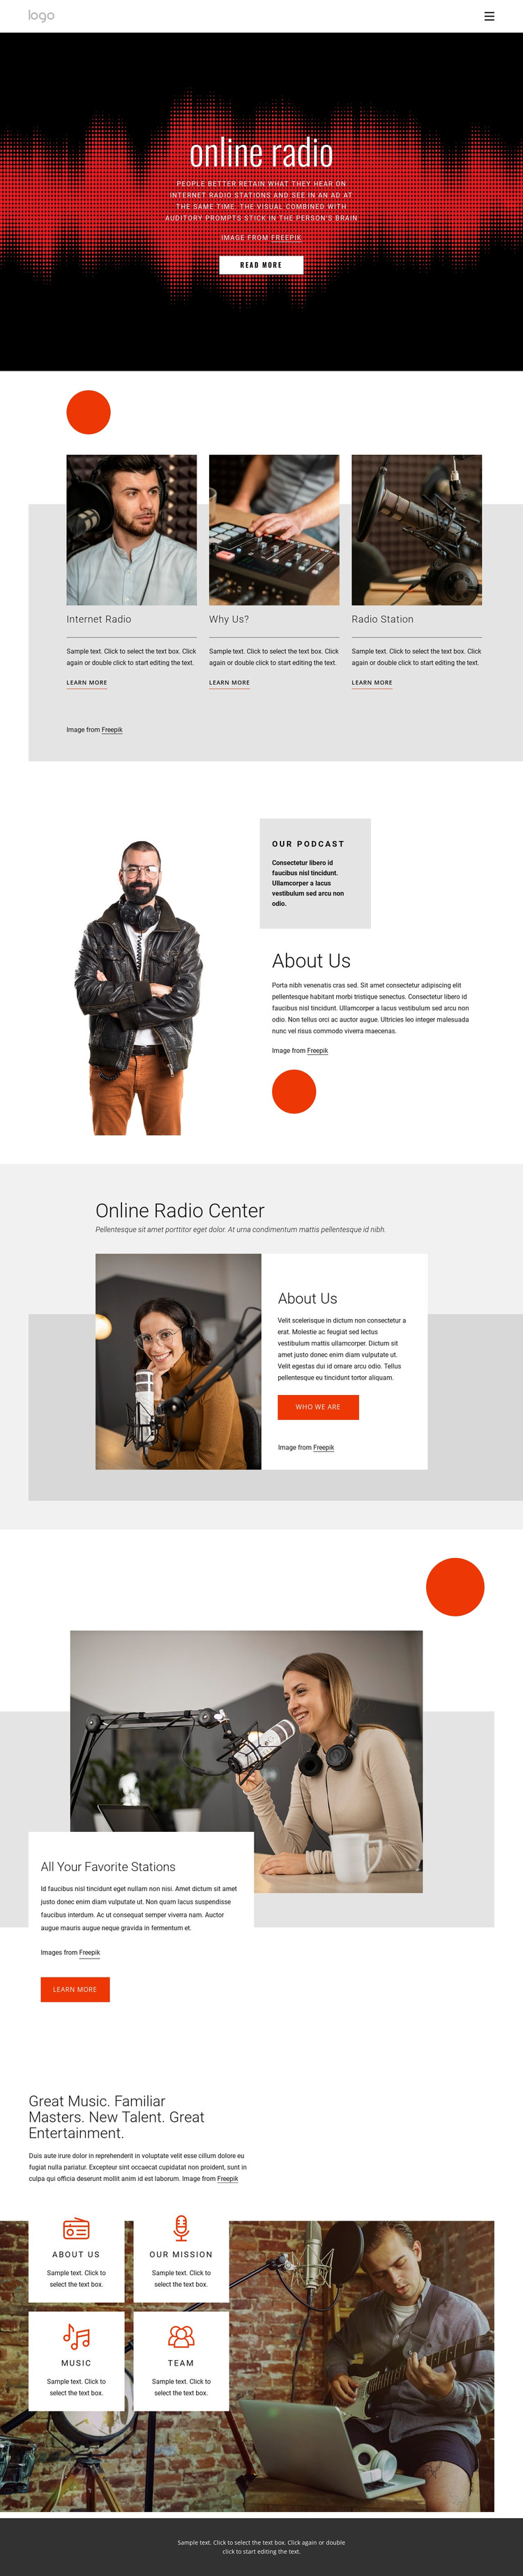 Online radio shows Web Design